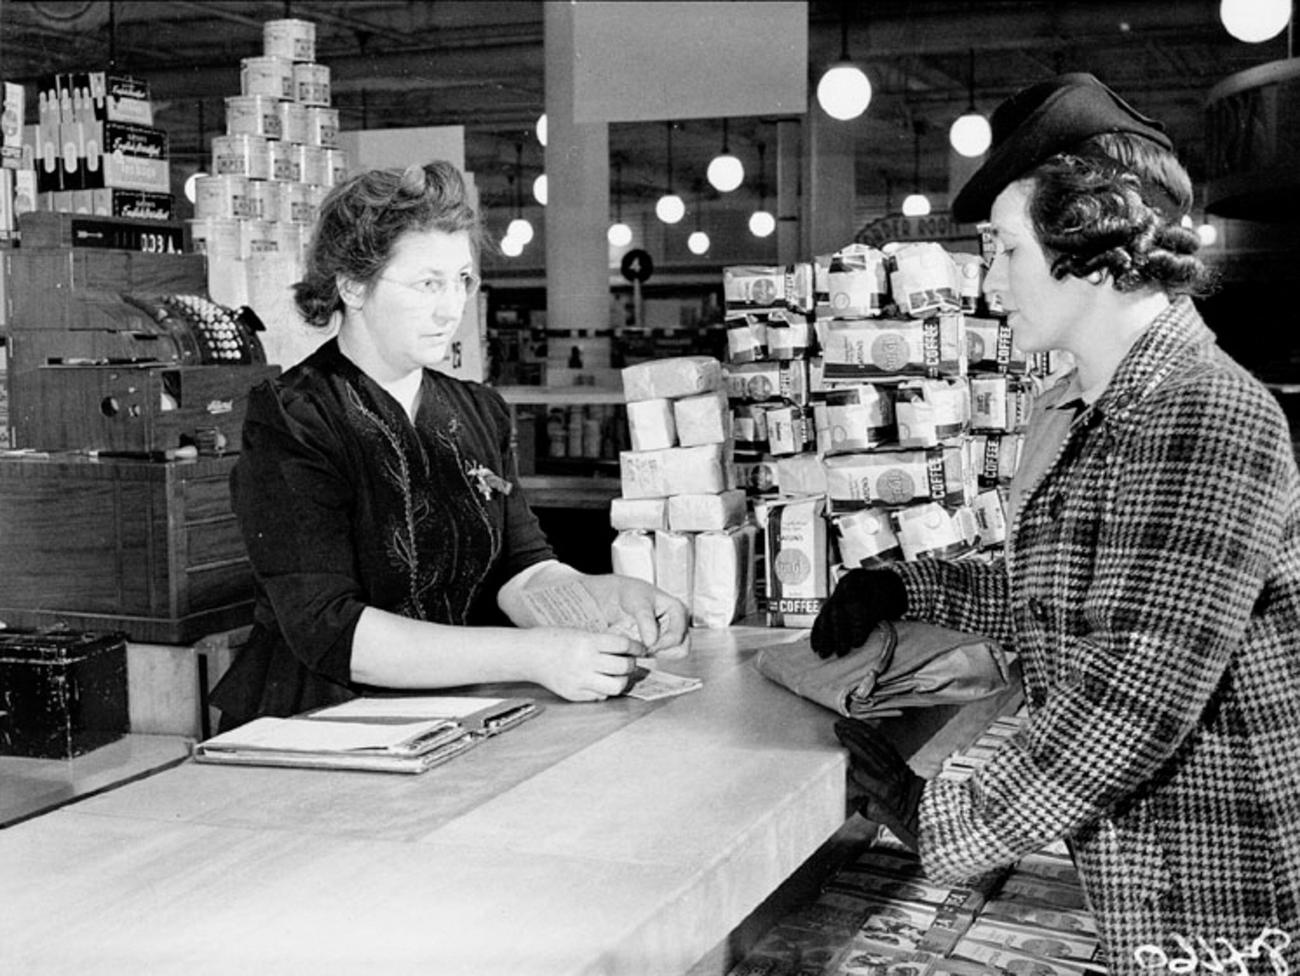 Deux femmes discutent à un comptoir de magasin avec des piles de produits derrière elles.